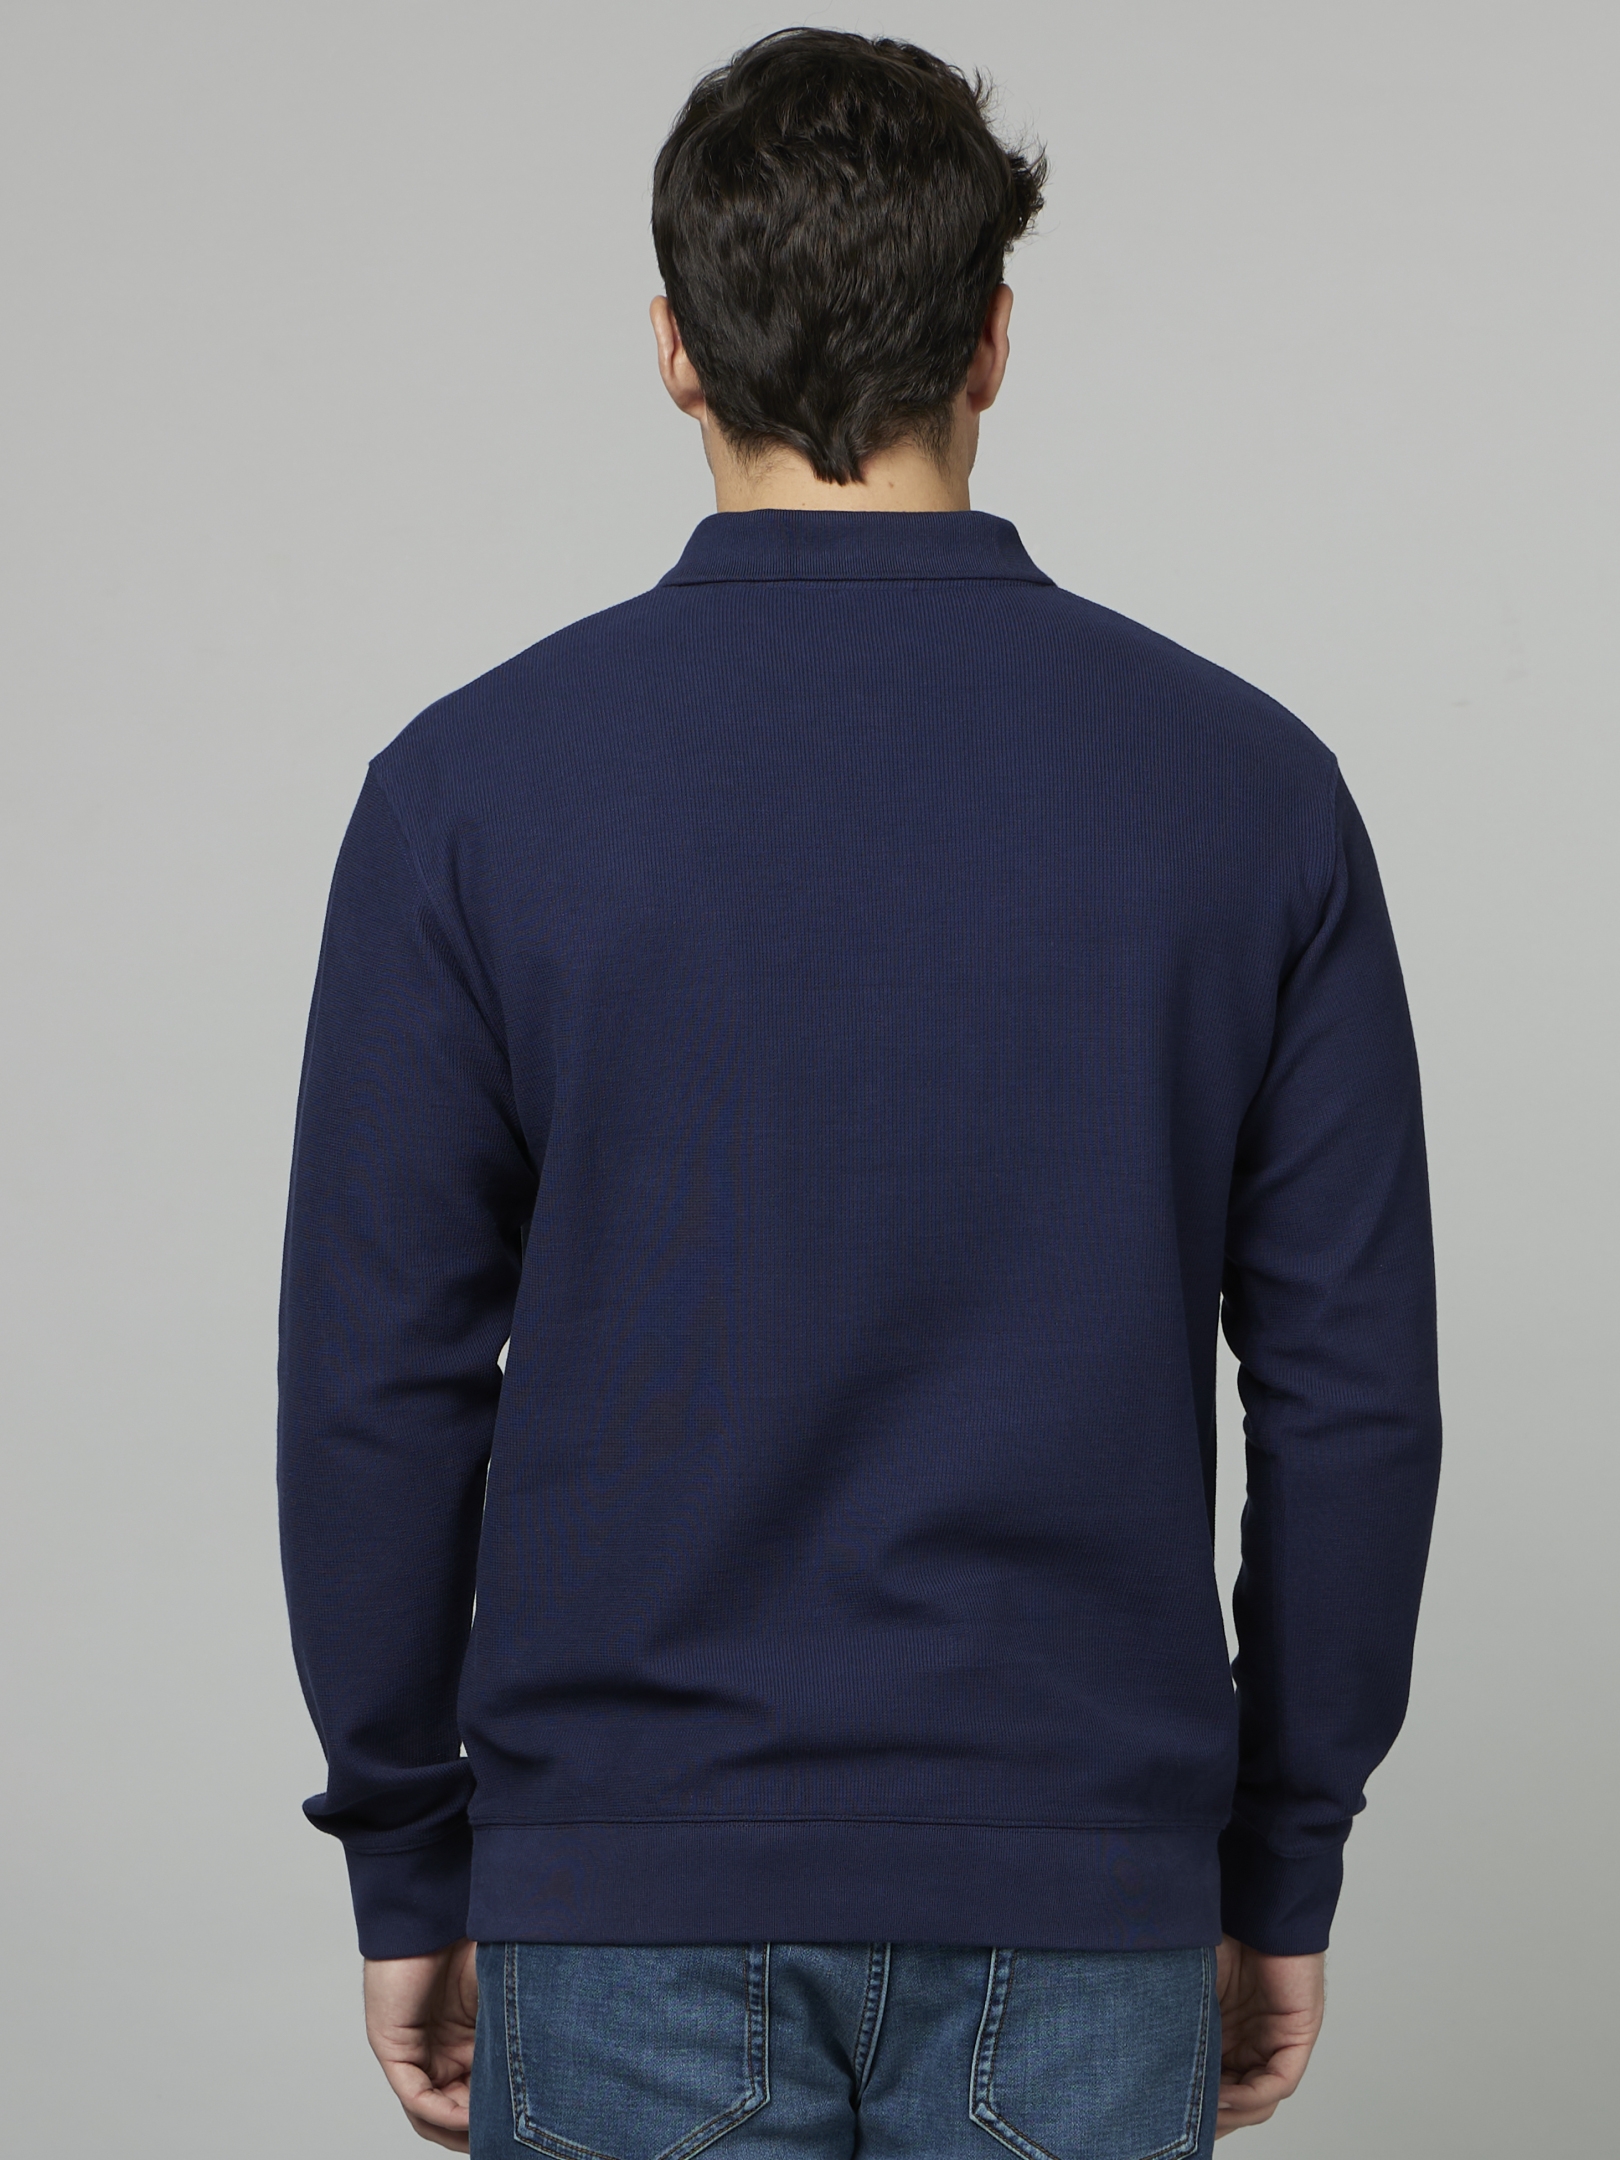 Men's Blue Solid Sweatshirts